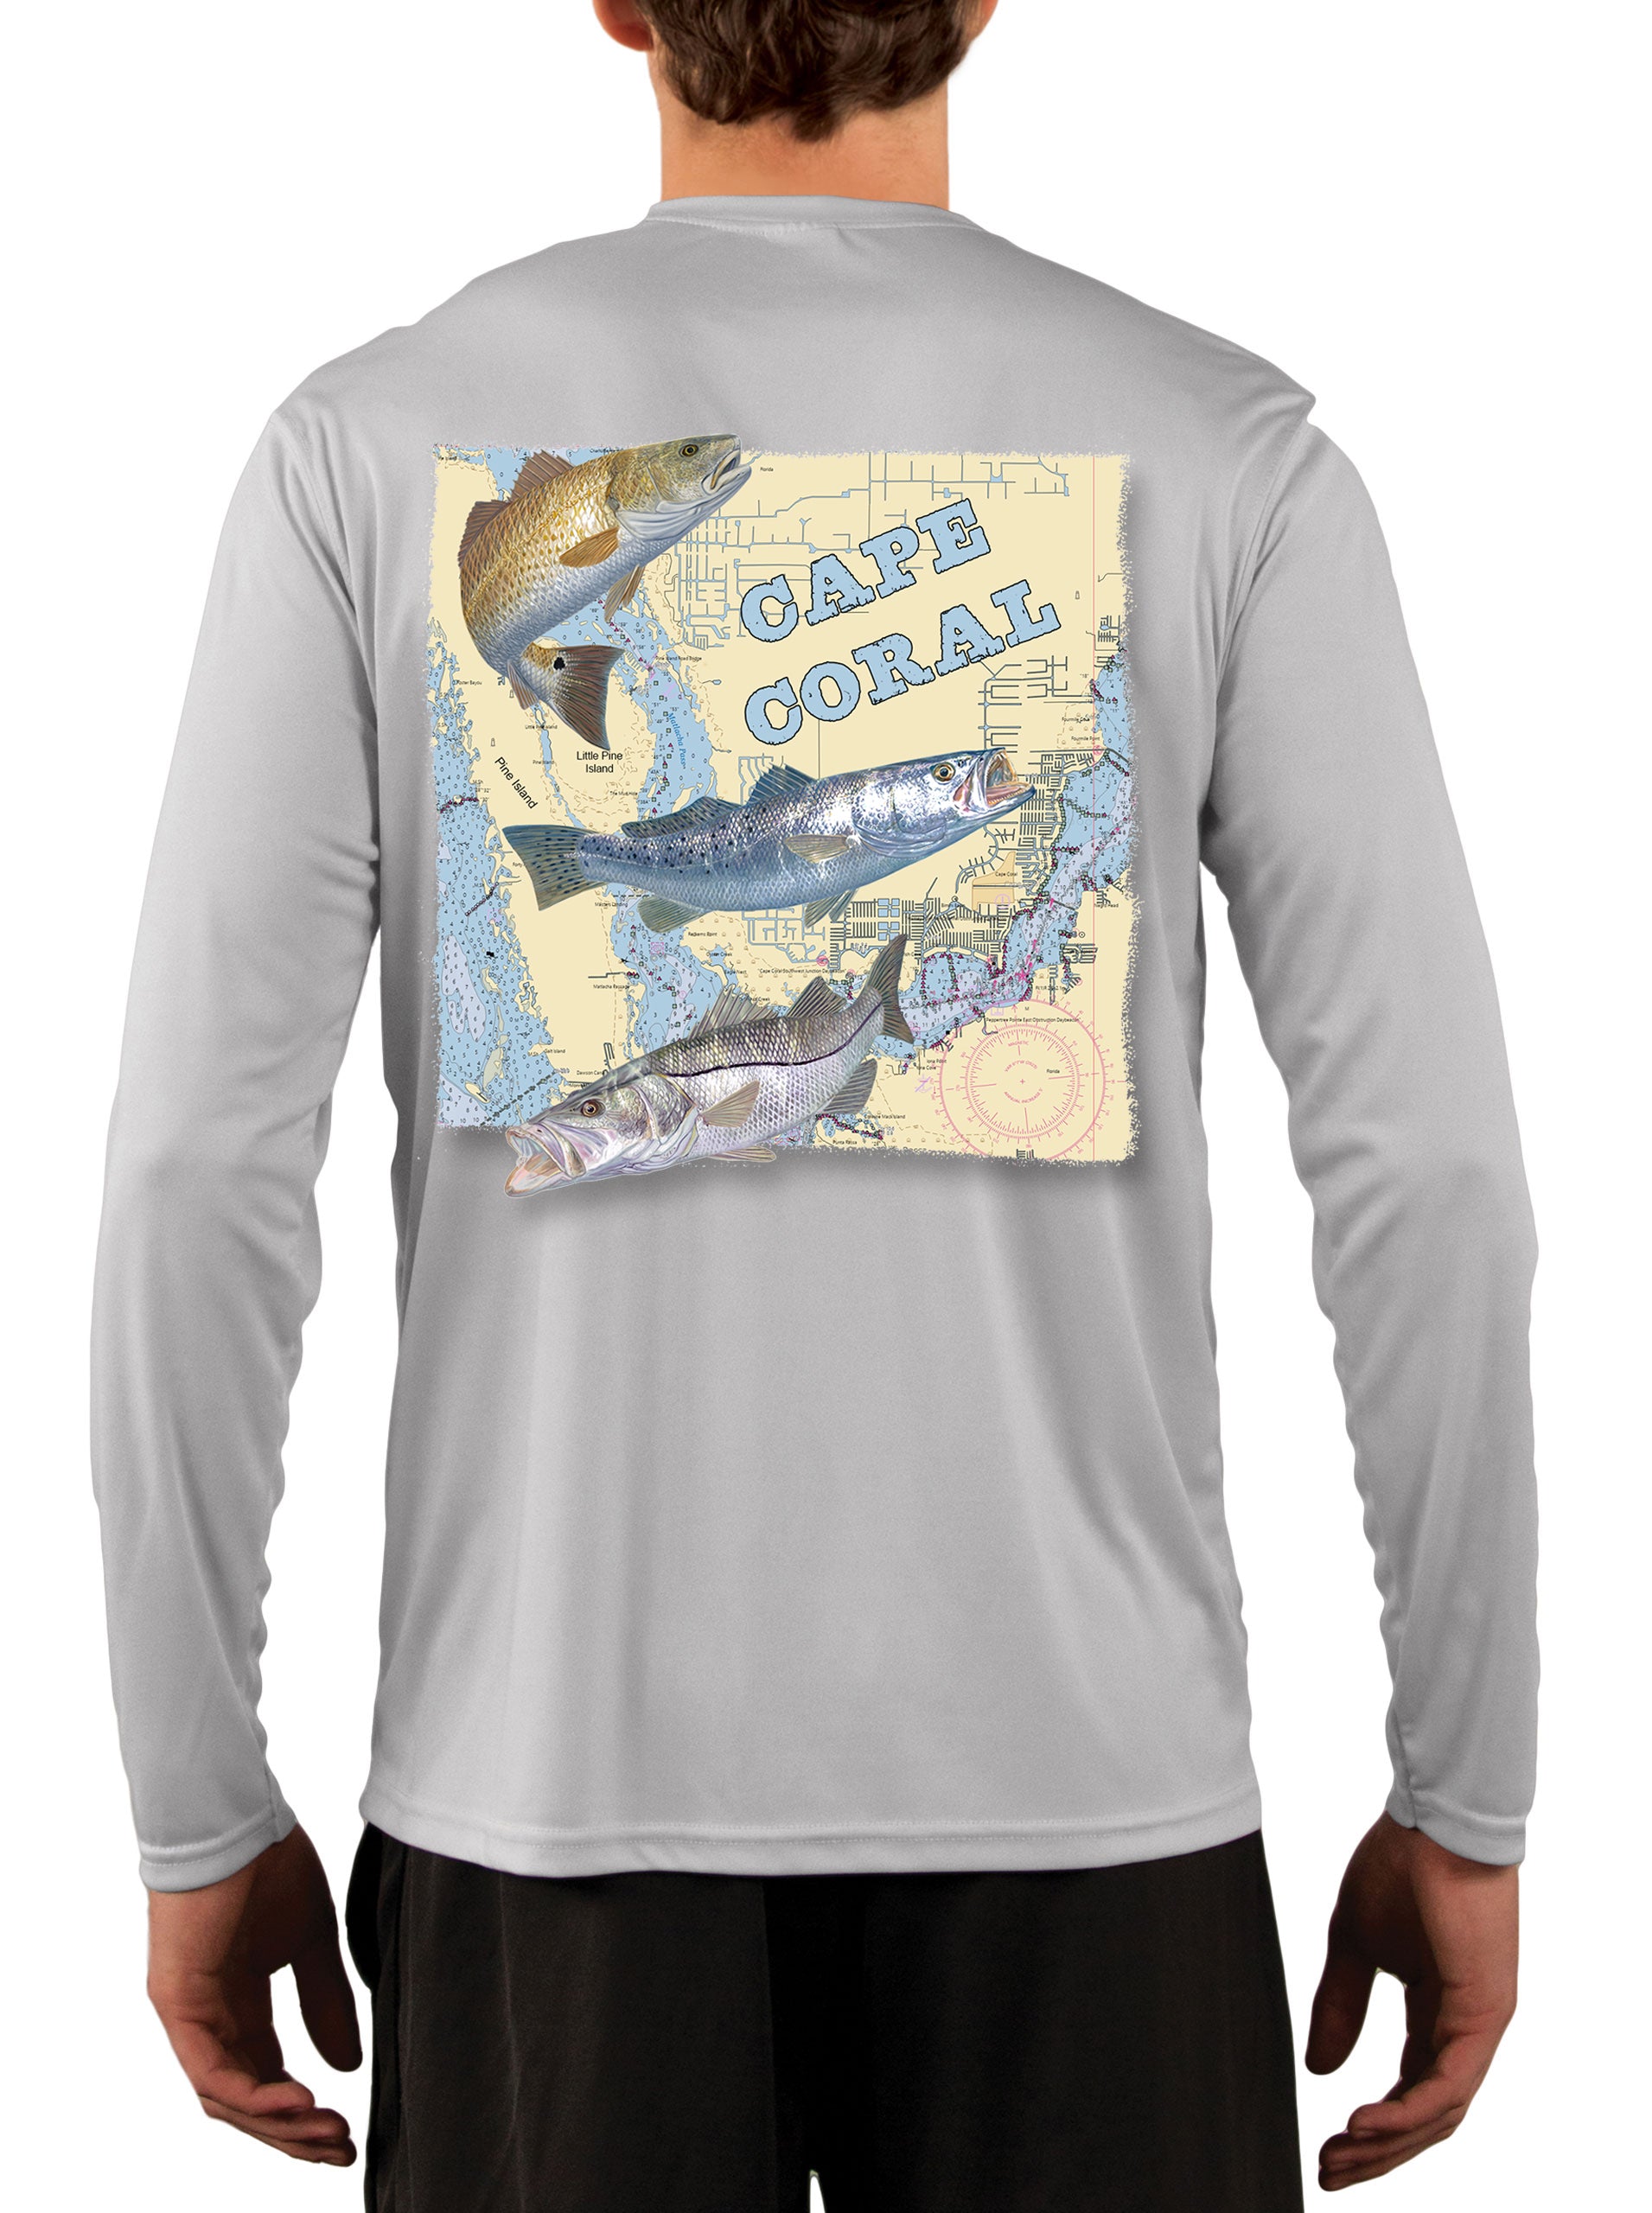 Fishing shirts for men